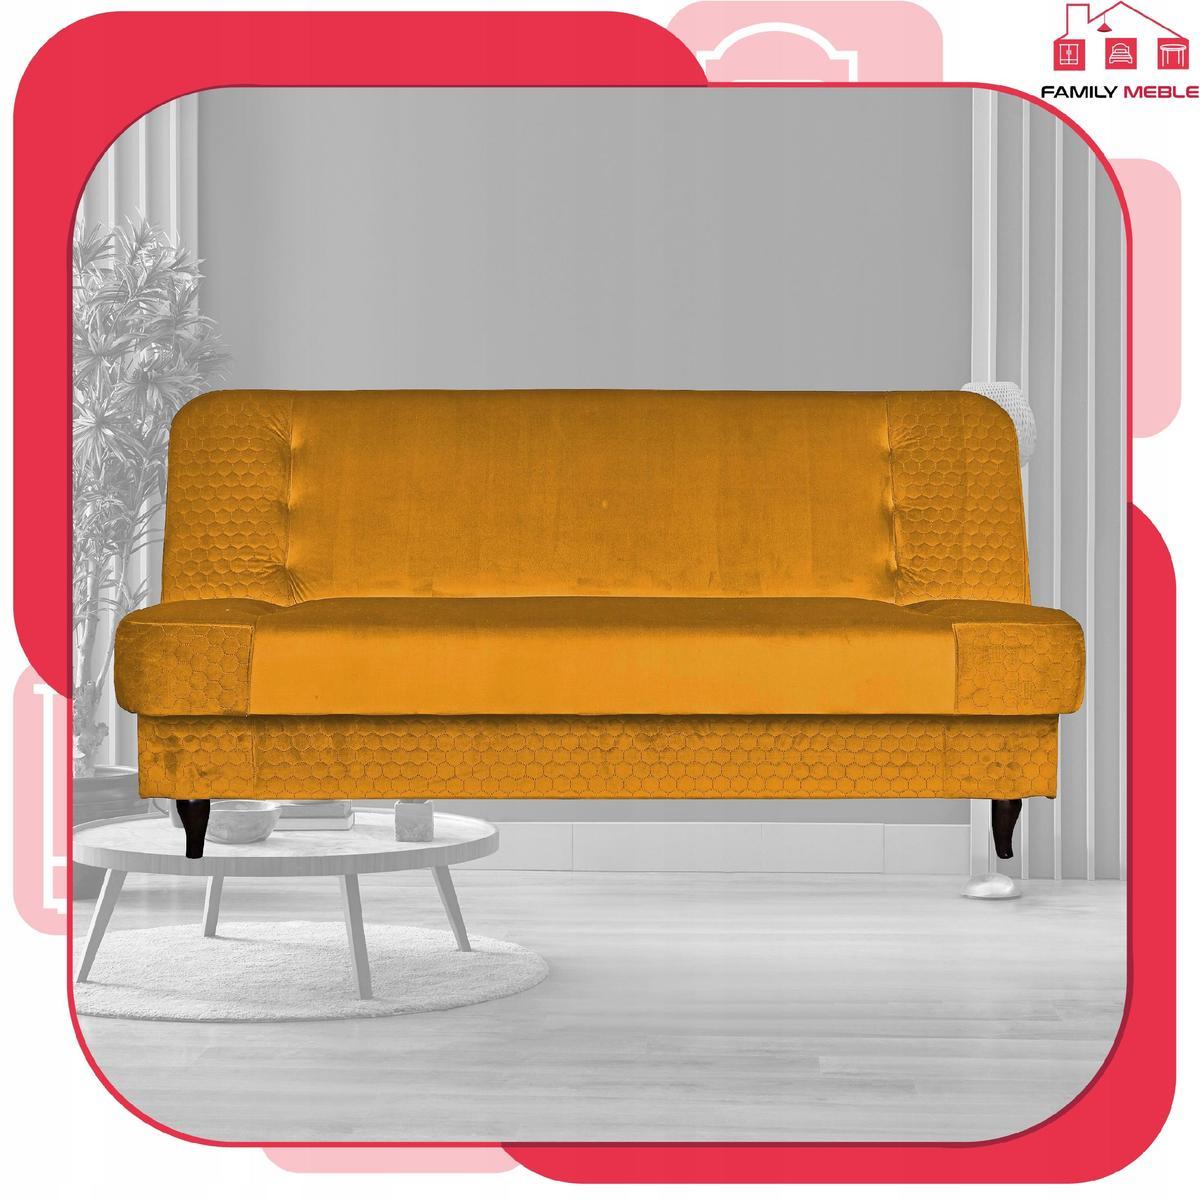 Wersalka sofa kanapa rozkładana Iza Family Meble nr. 2